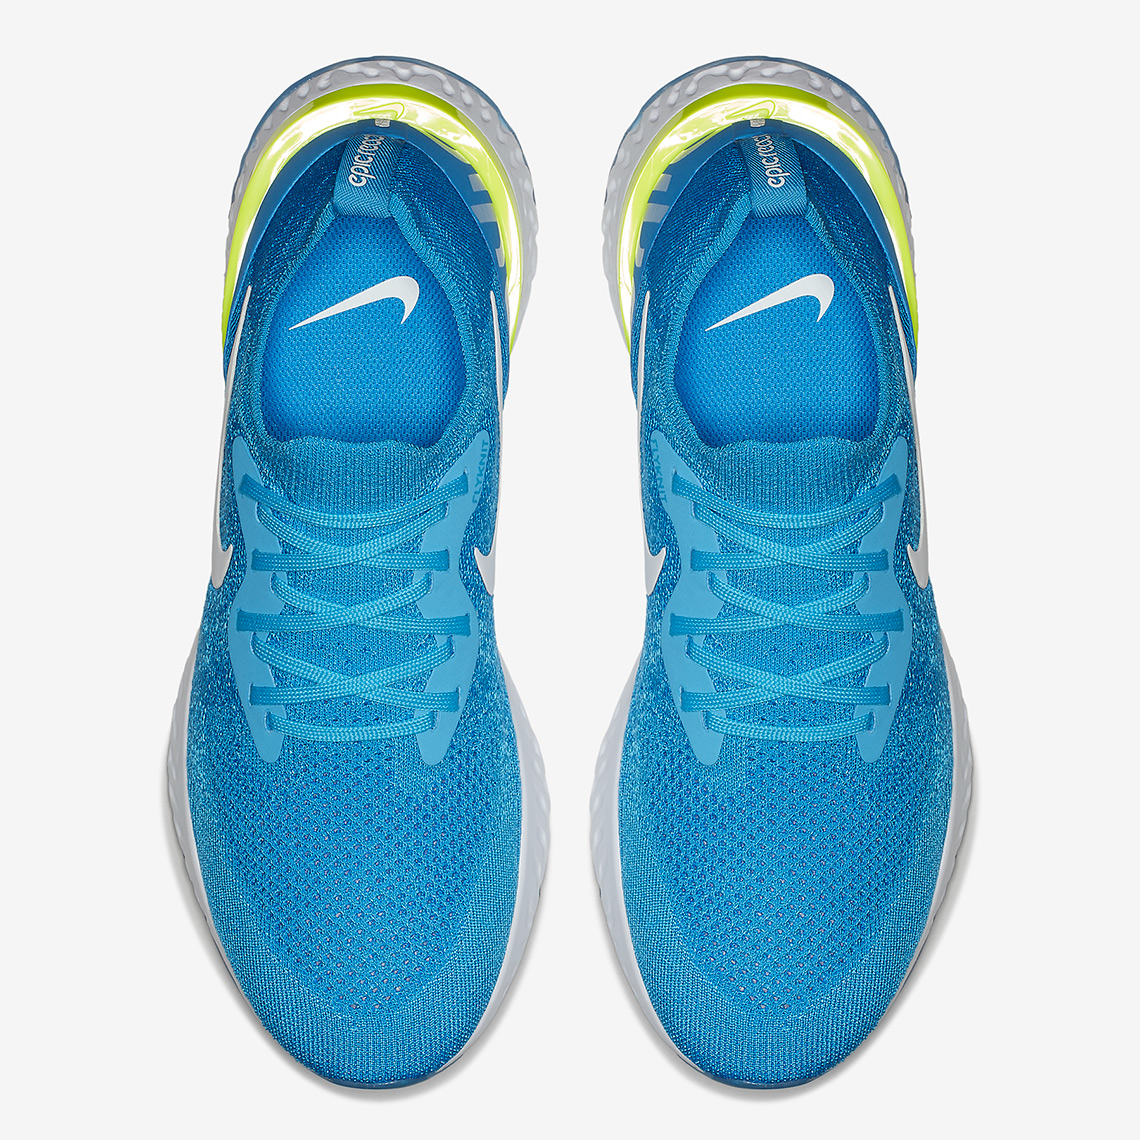 Nike Epic React Flyknit Volt Glow Release Info 2